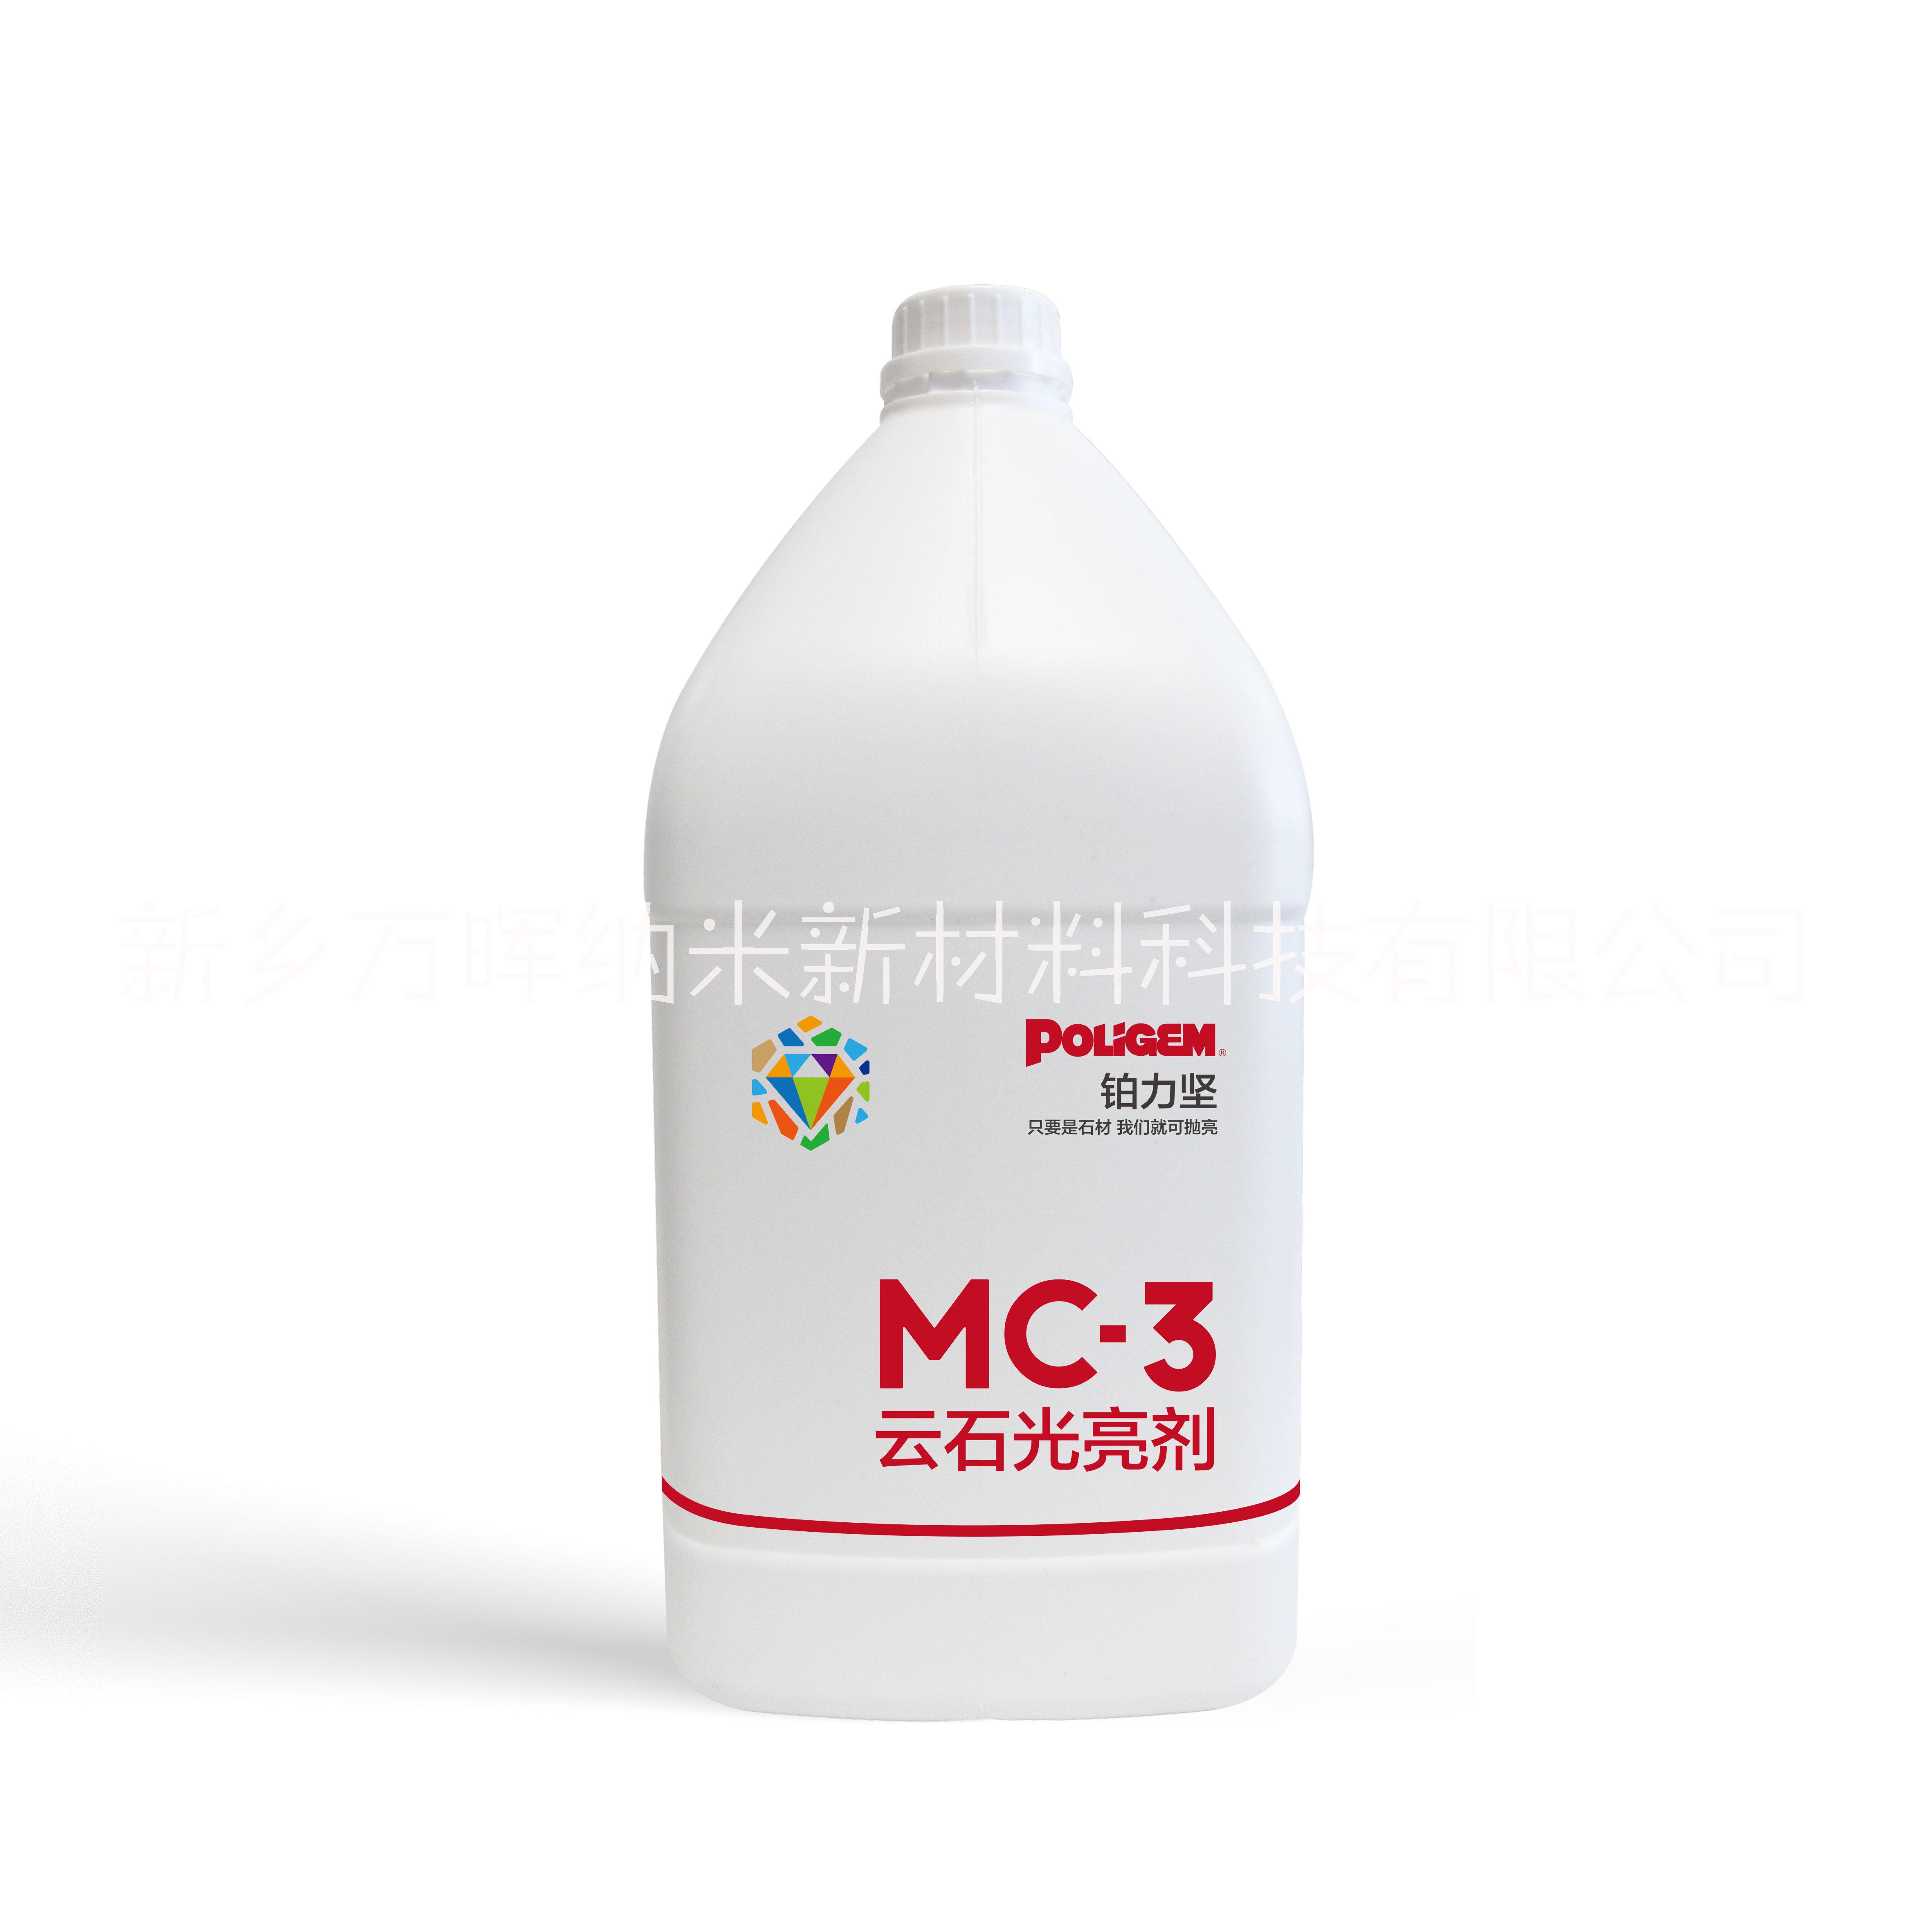 MC-3云石光亮剂